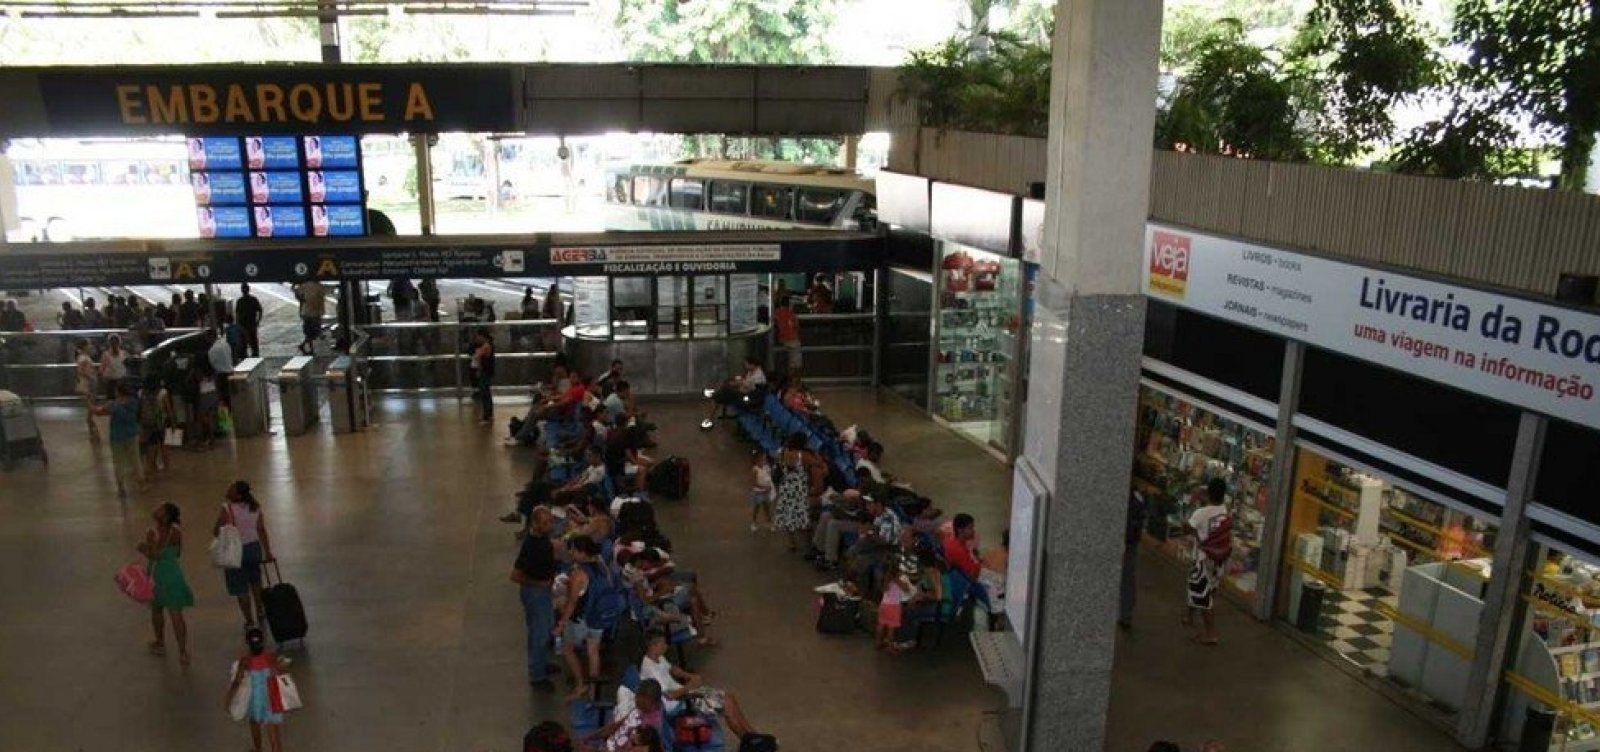 Empresa Gráfica da Bahia paga R$ 54 mil em passagens de ônibus para quatro empregados